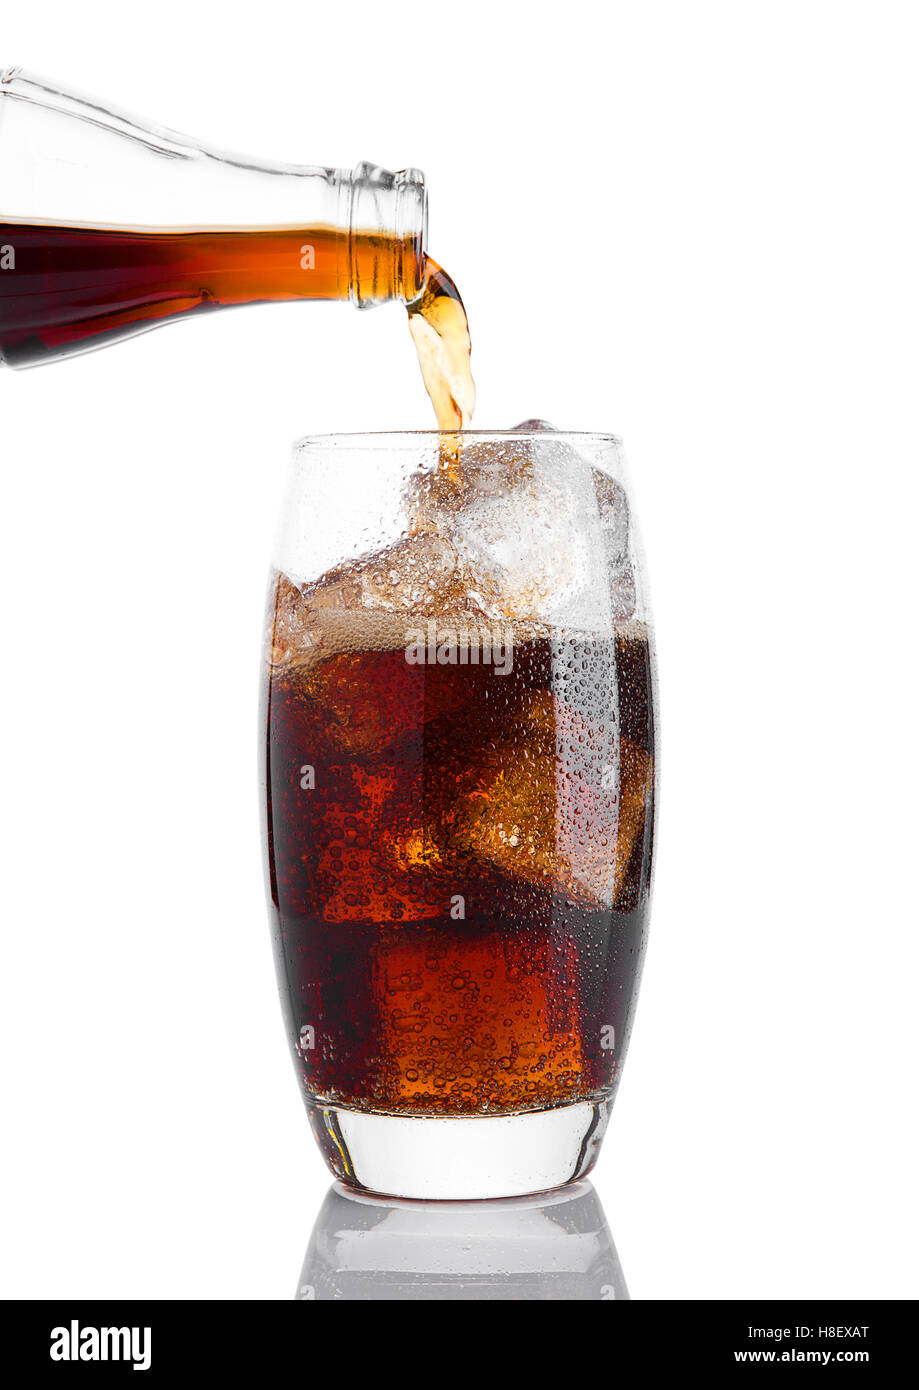 Verter la bebida gaseosa de cola en el vaso con hielo sobre fondo blanco  Fotografía de stock - Alamy